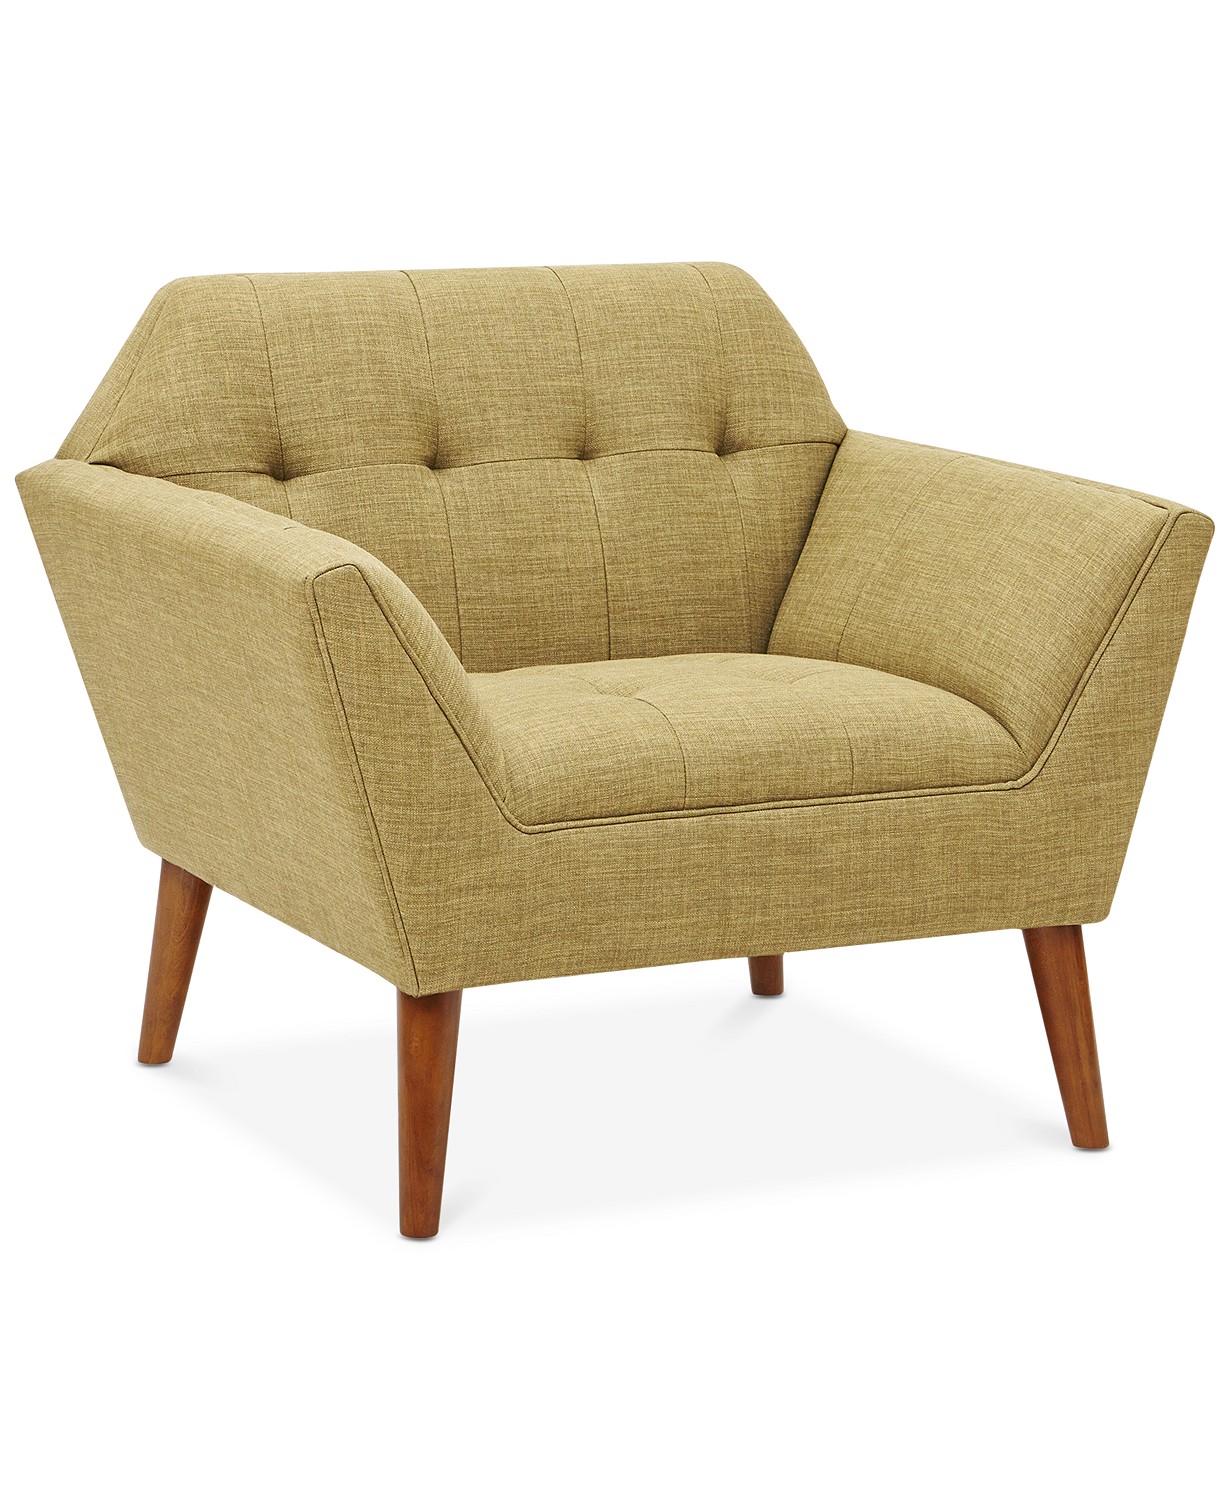 Newport Lounger Mid-Century Modern Chair